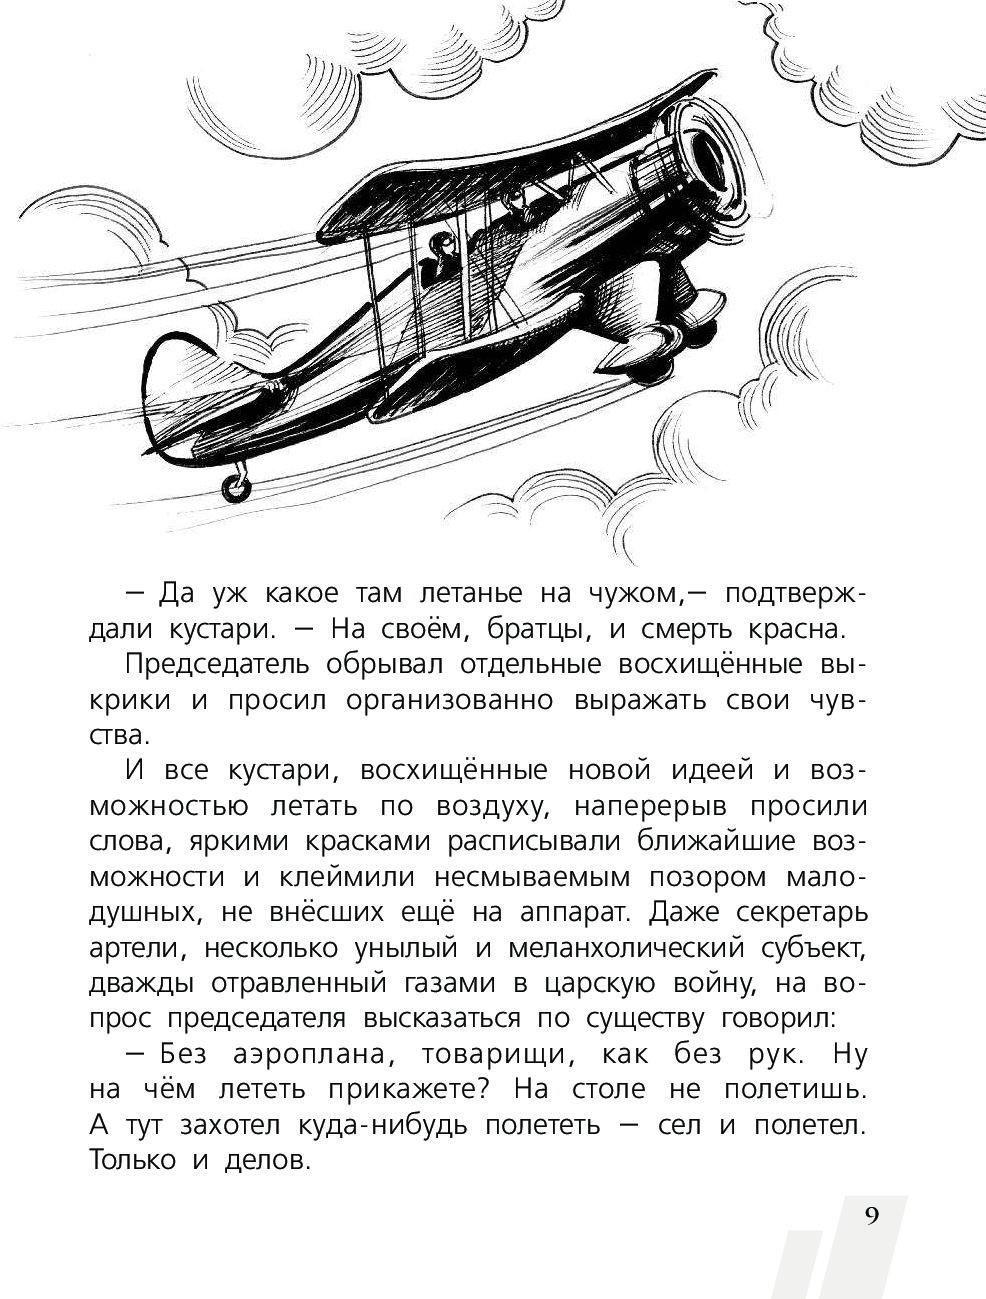 История про самолет для детей читать